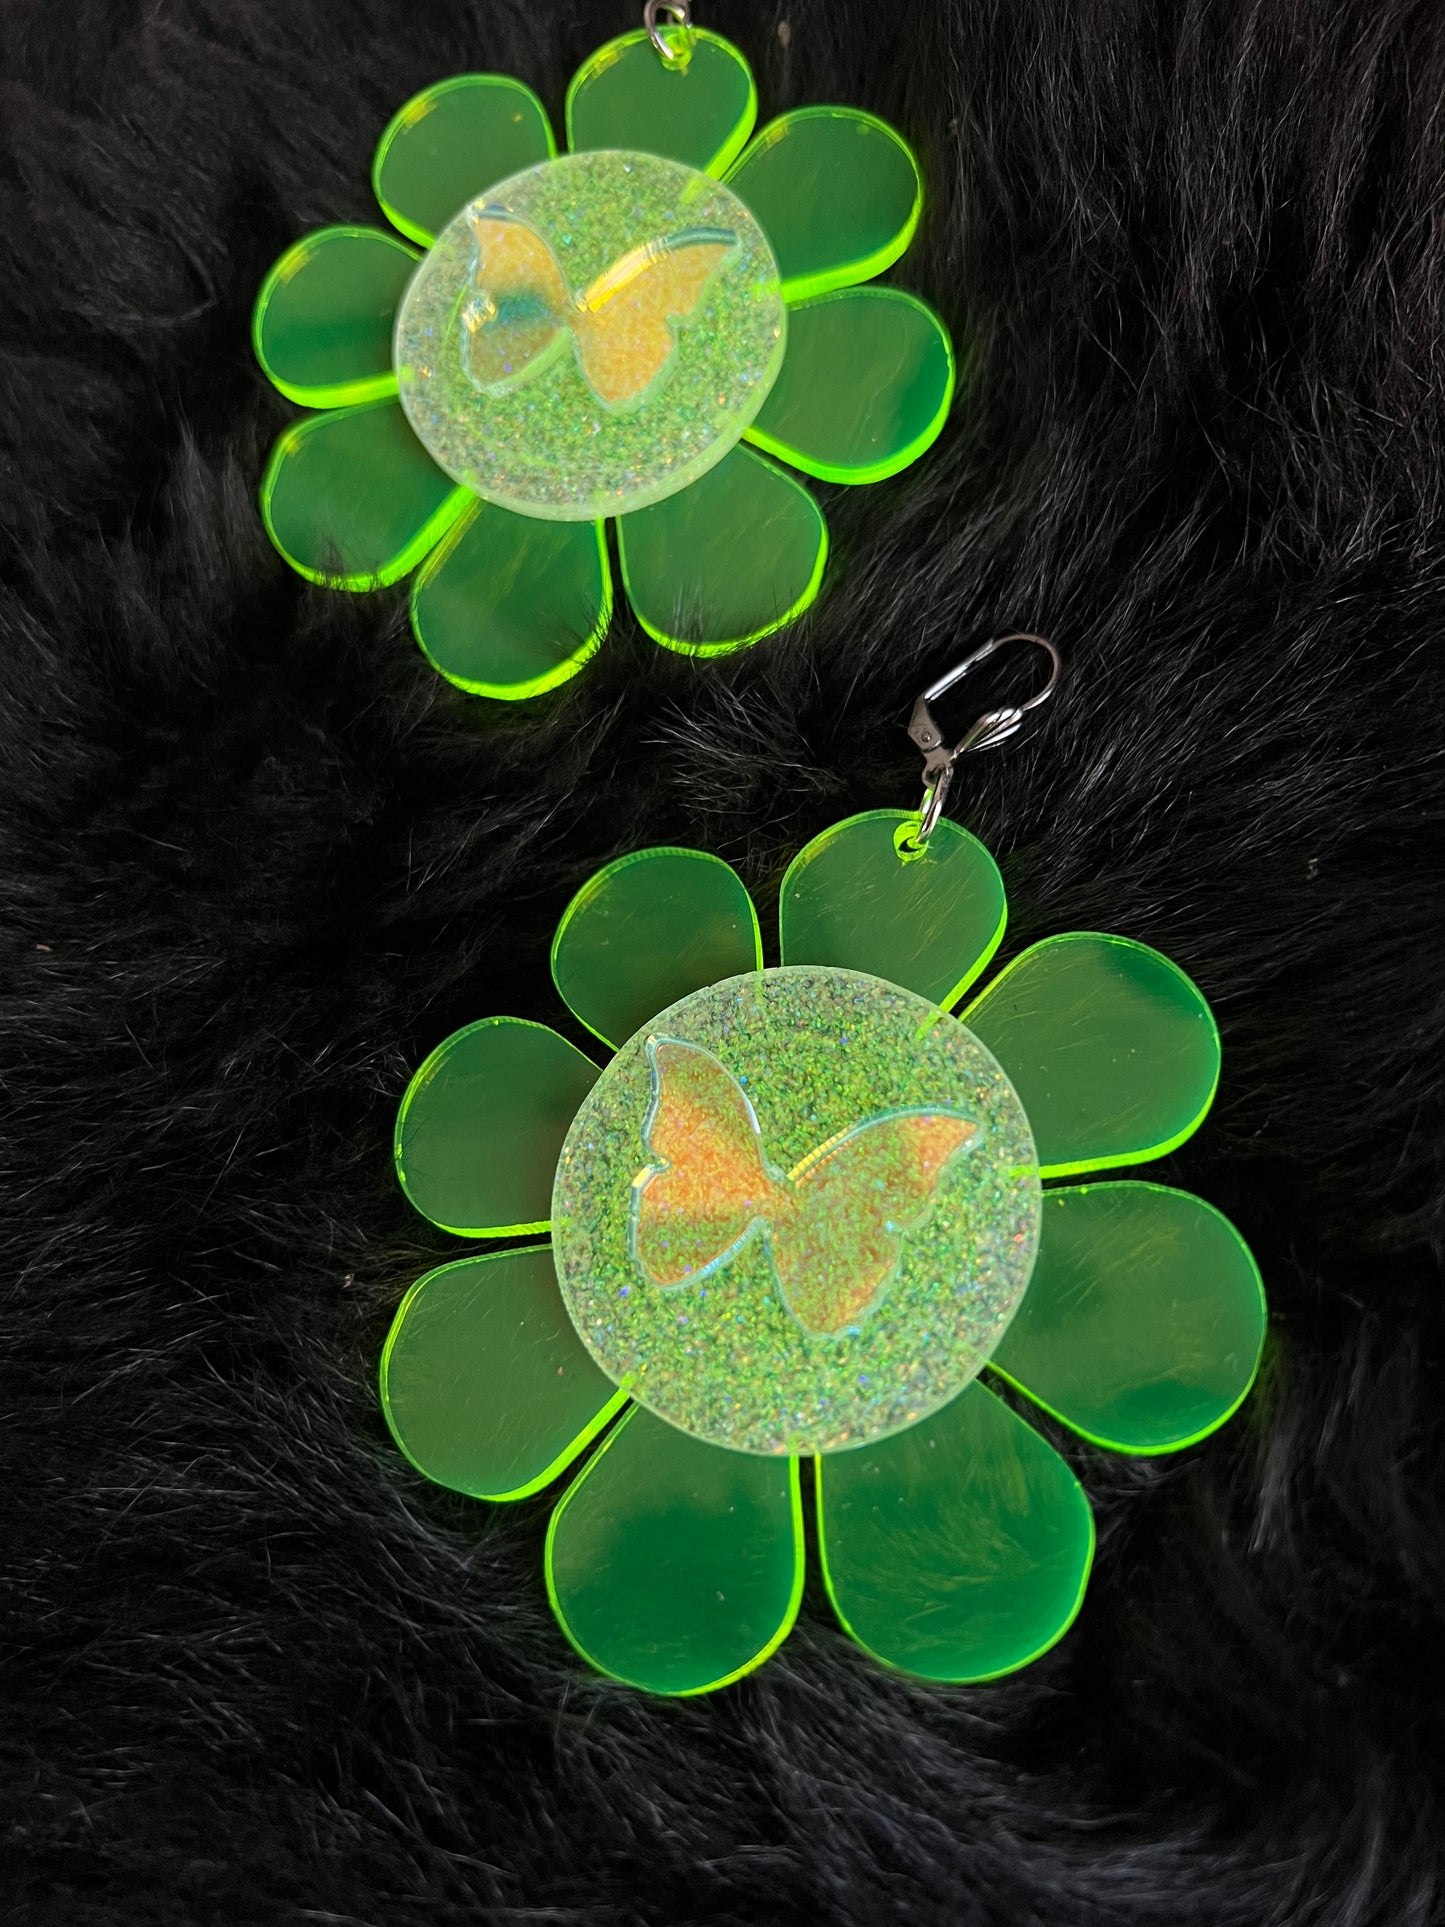 Neon green Butterfly Flower Power Earrings